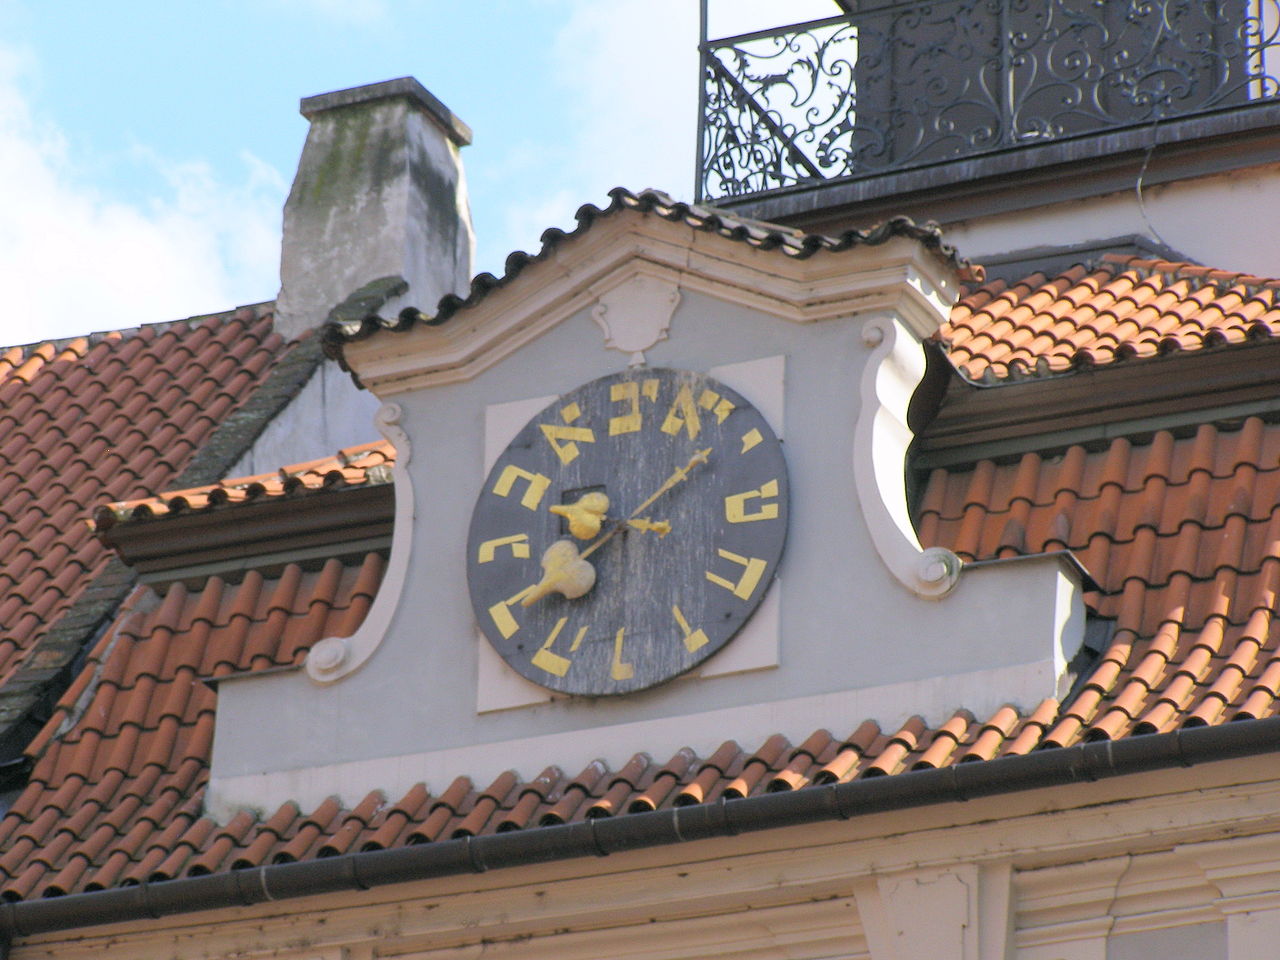 Vysoká synagoga v Praze, hodiny jdou v "protisměru"